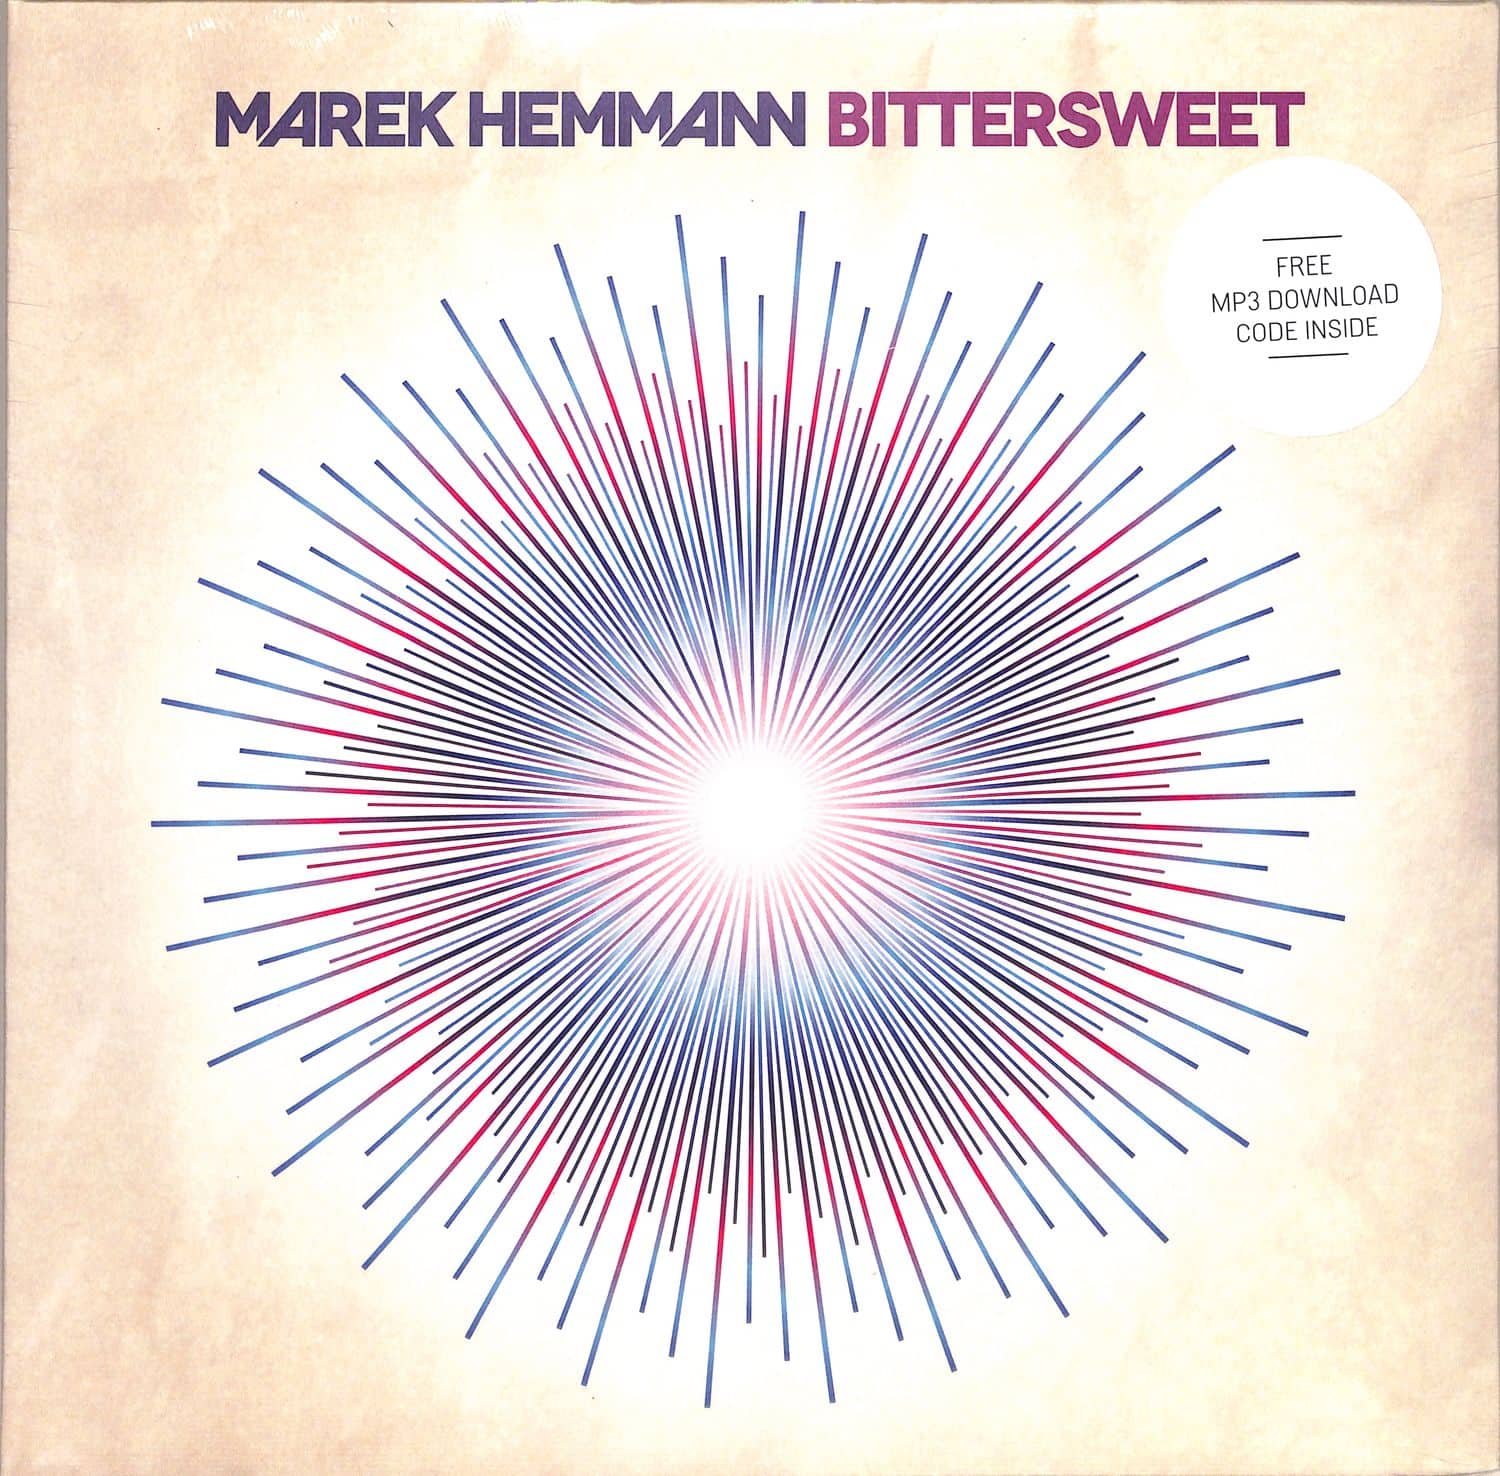 Marek Hemmann - BITTERSWEET 